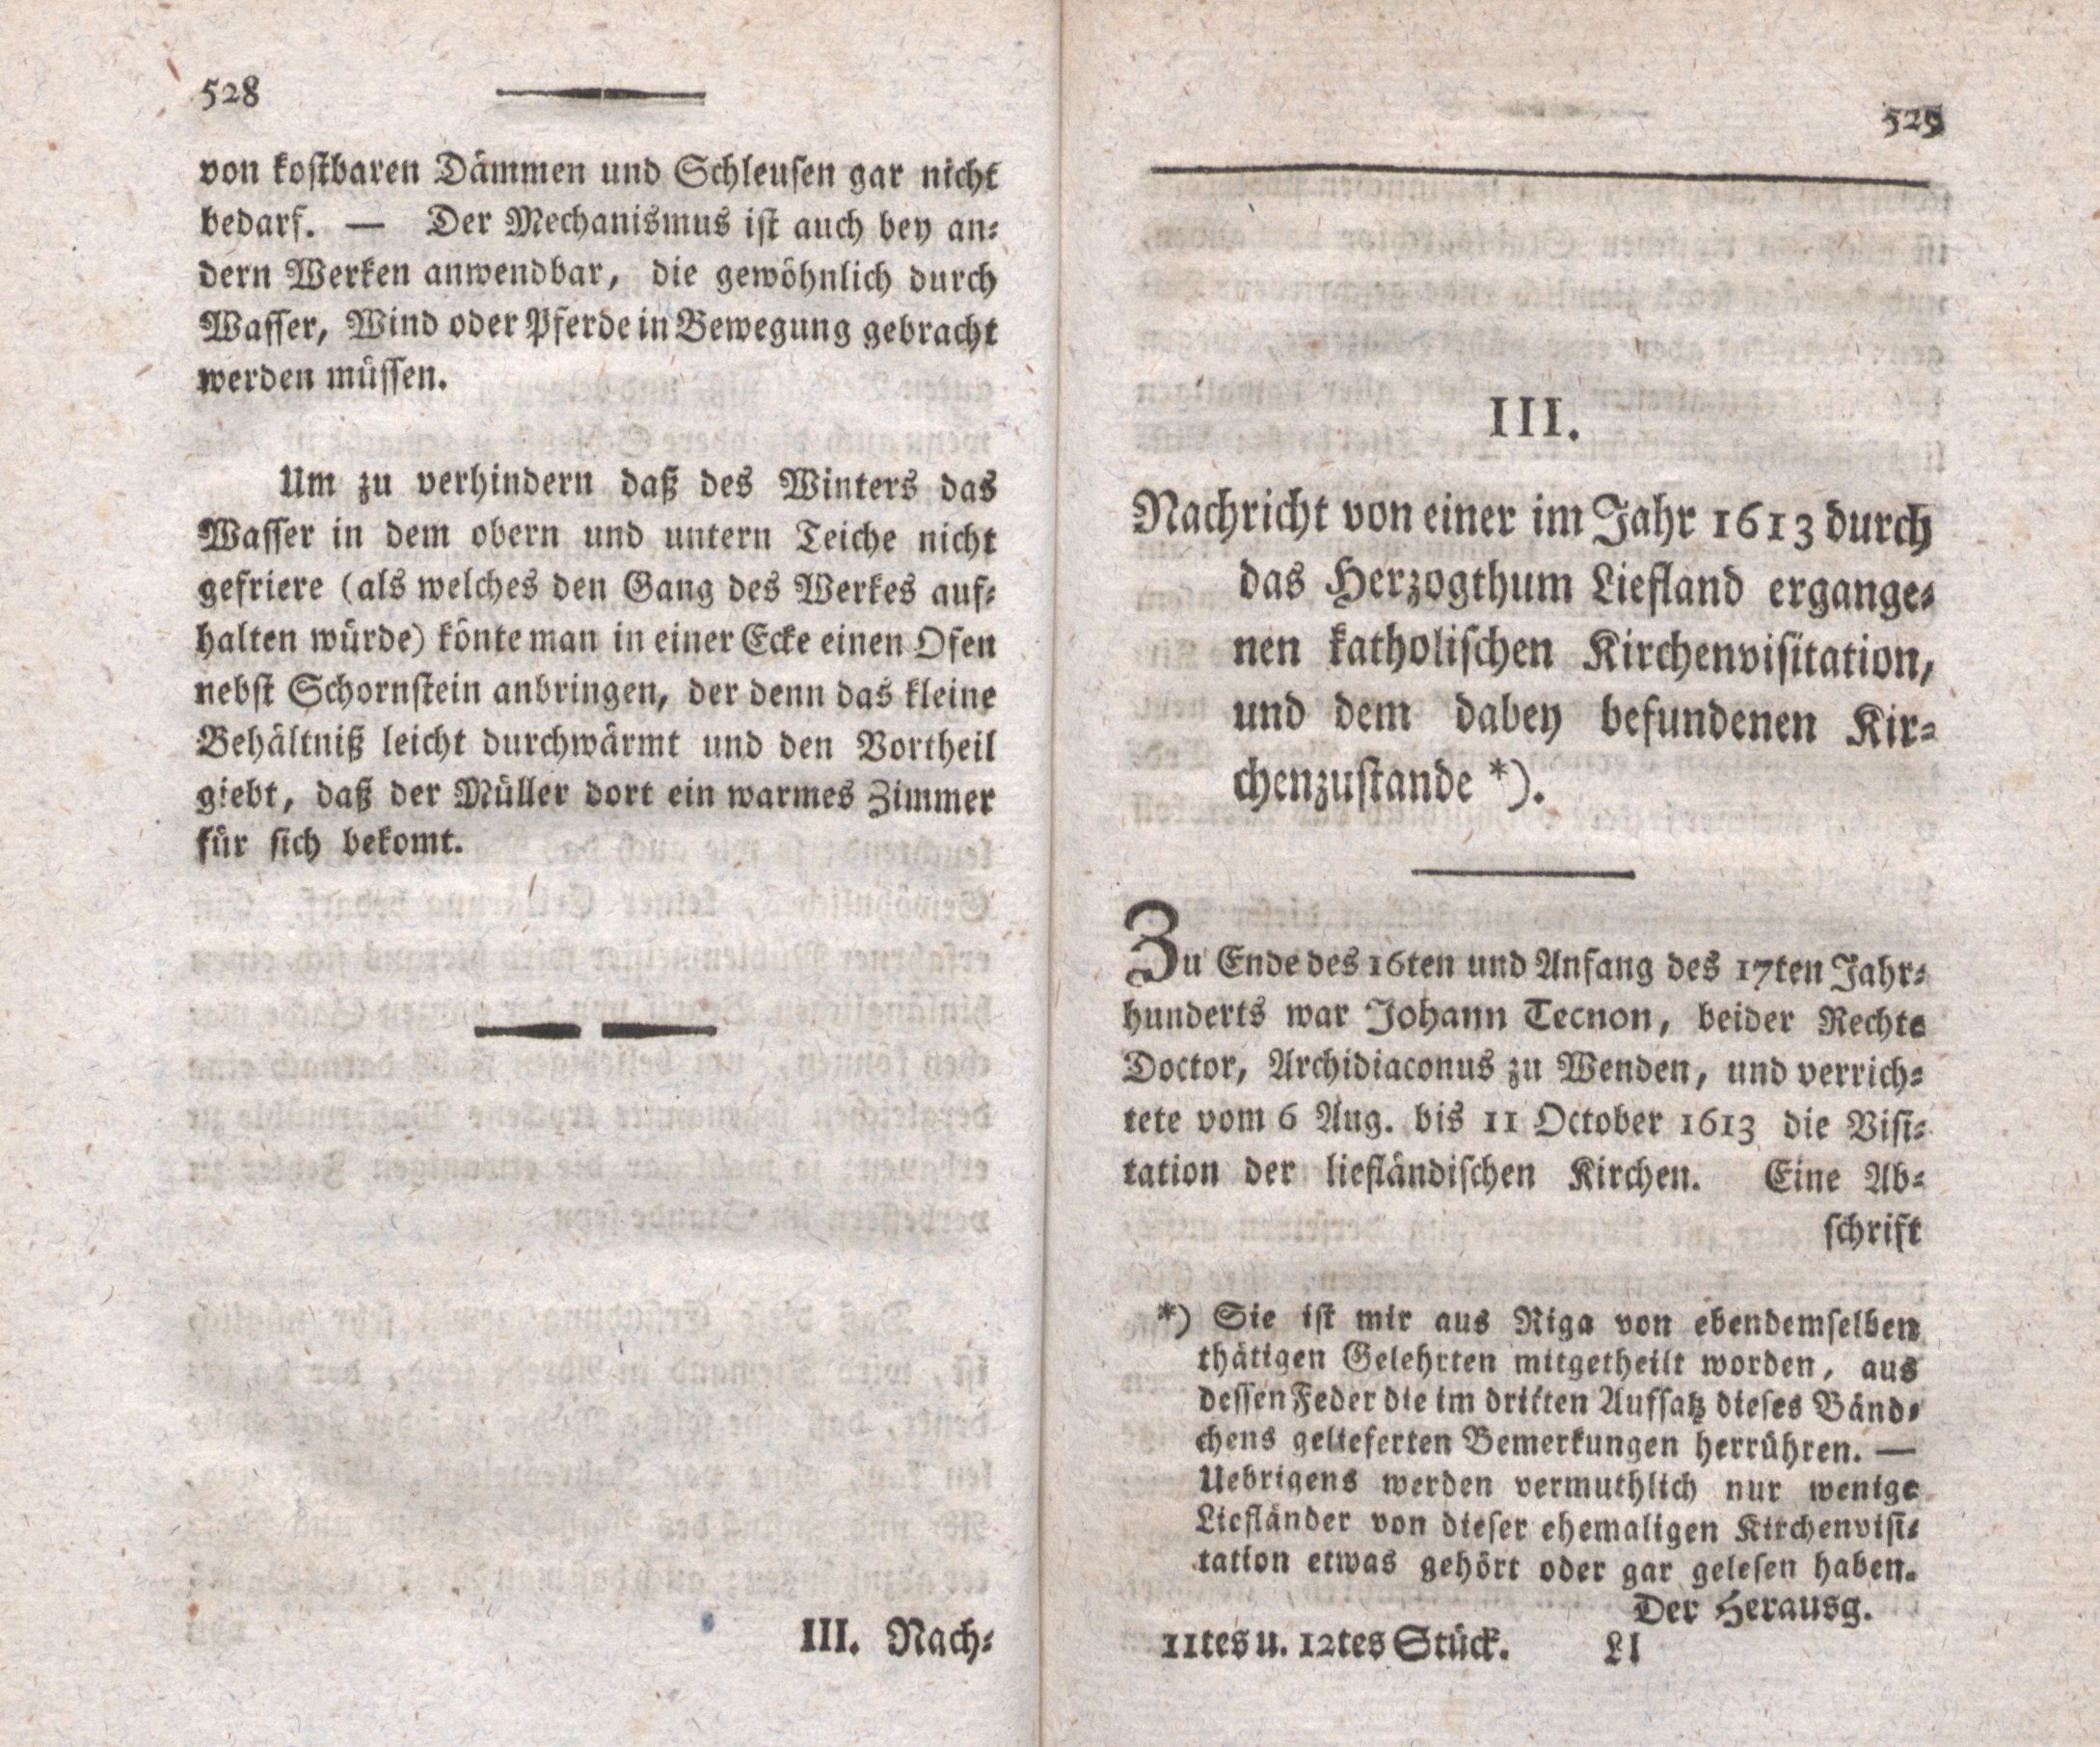 Nachricht von einer im Jahr 1613 durch das Herzogthum Liefland ergangenen katholischen Kirchenvisitation, und dem dabey befundenen Kirchenzustande (1795) | 1. (528-529) Main body of text